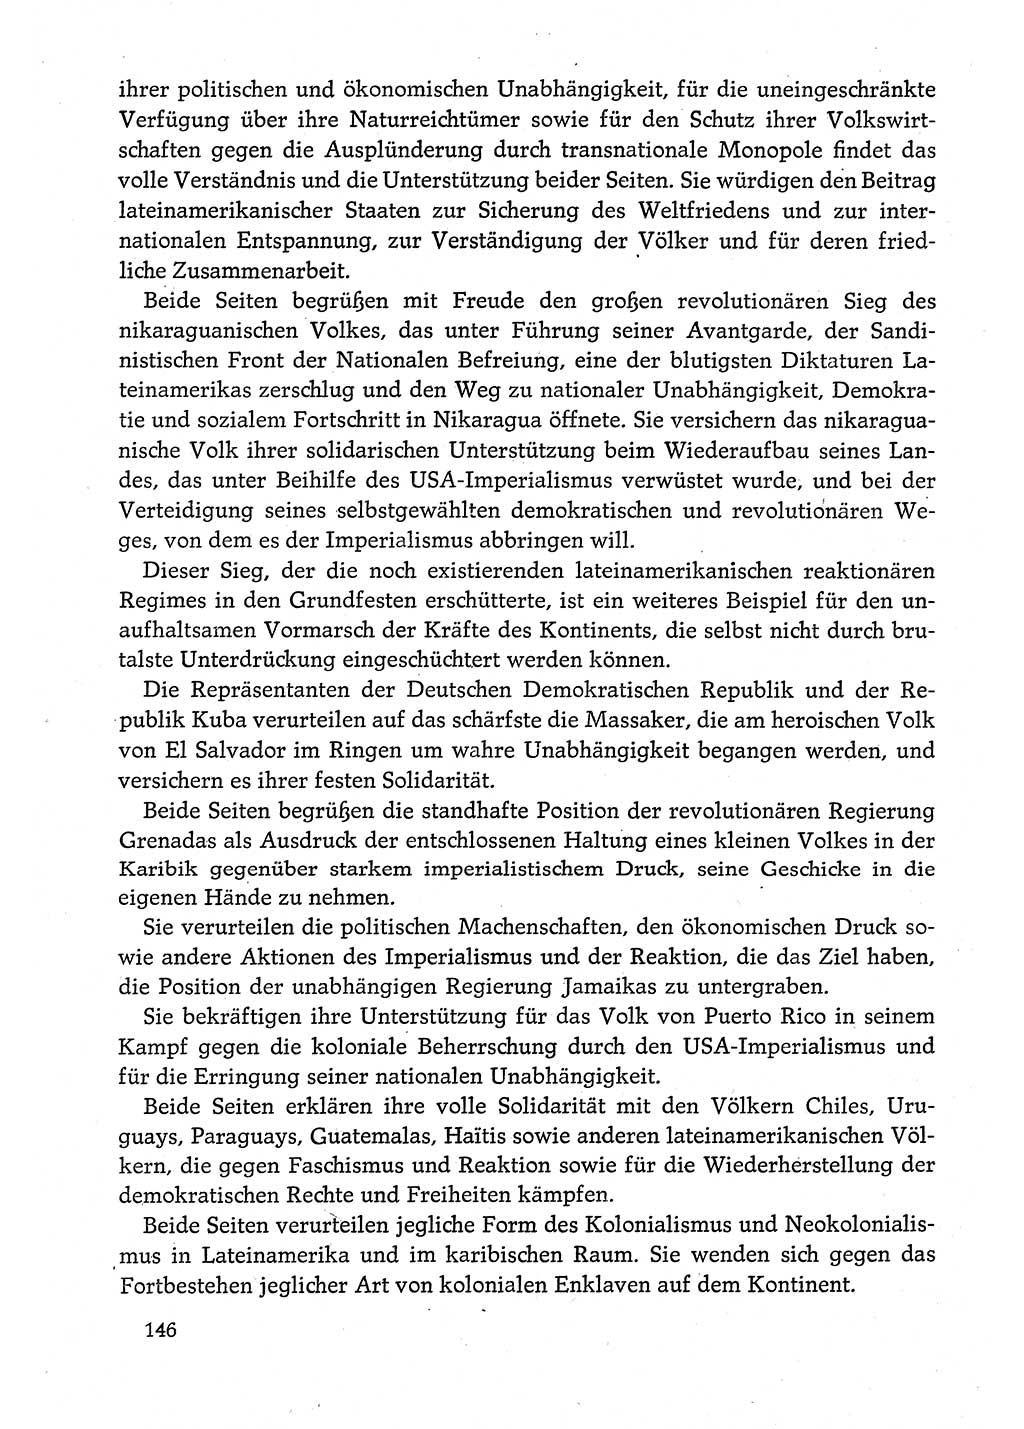 Dokumente der Sozialistischen Einheitspartei Deutschlands (SED) [Deutsche Demokratische Republik (DDR)] 1980-1981, Seite 146 (Dok. SED DDR 1980-1981, S. 146)